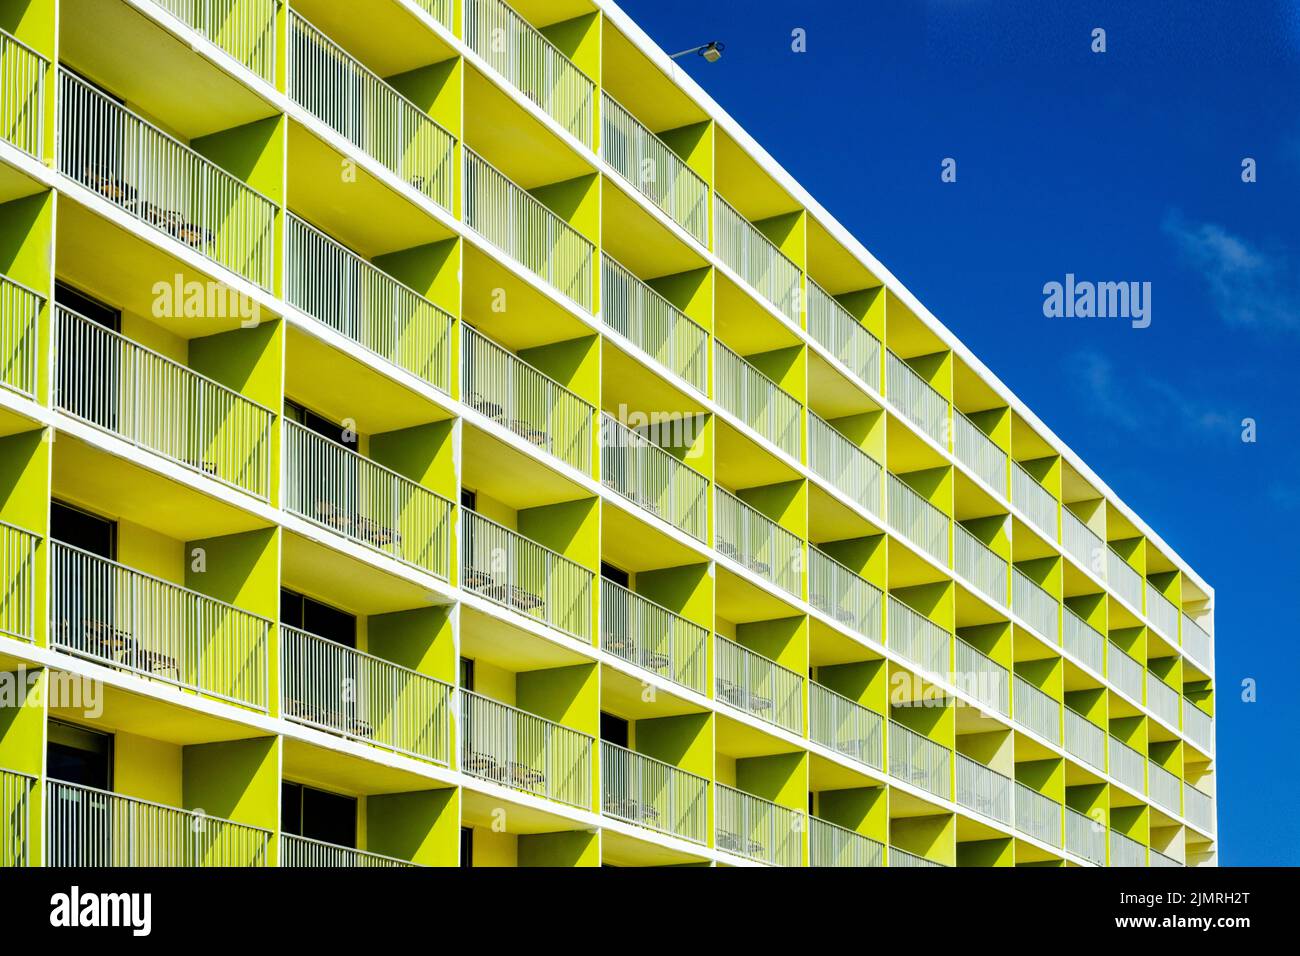 Ein moderner Apartmentblock in auffälligen Farben. Das markante Boxdesign und die typischen karibischen Farben machen das Gebäude zum Aufheben Stockfoto